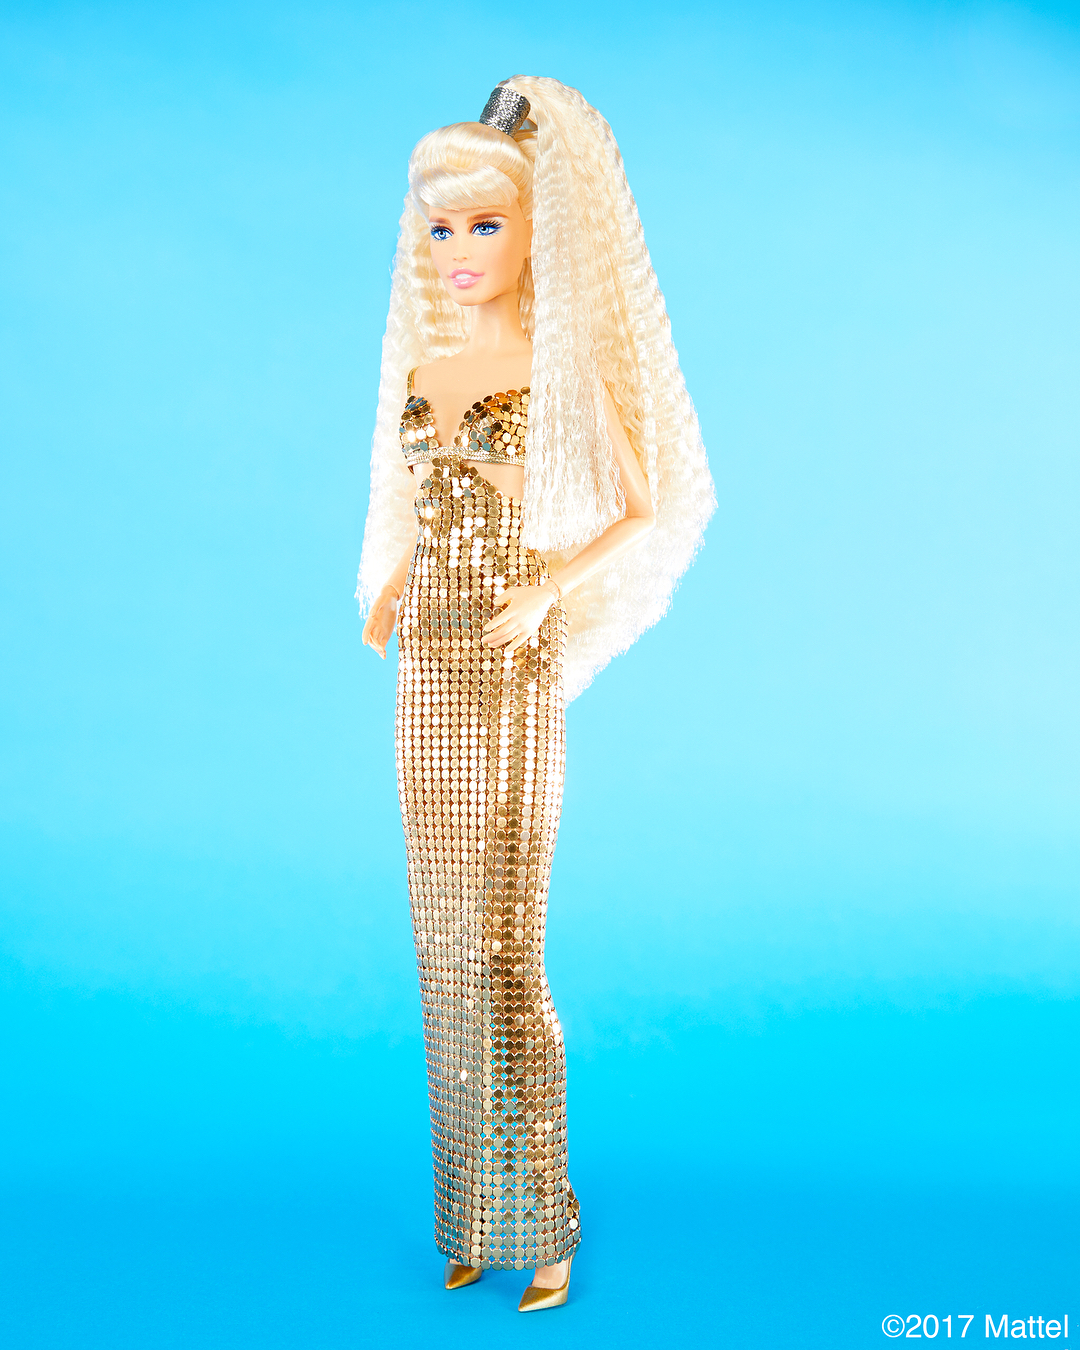 La supermodelo Claudia Schiffer se convierte en una Barbie